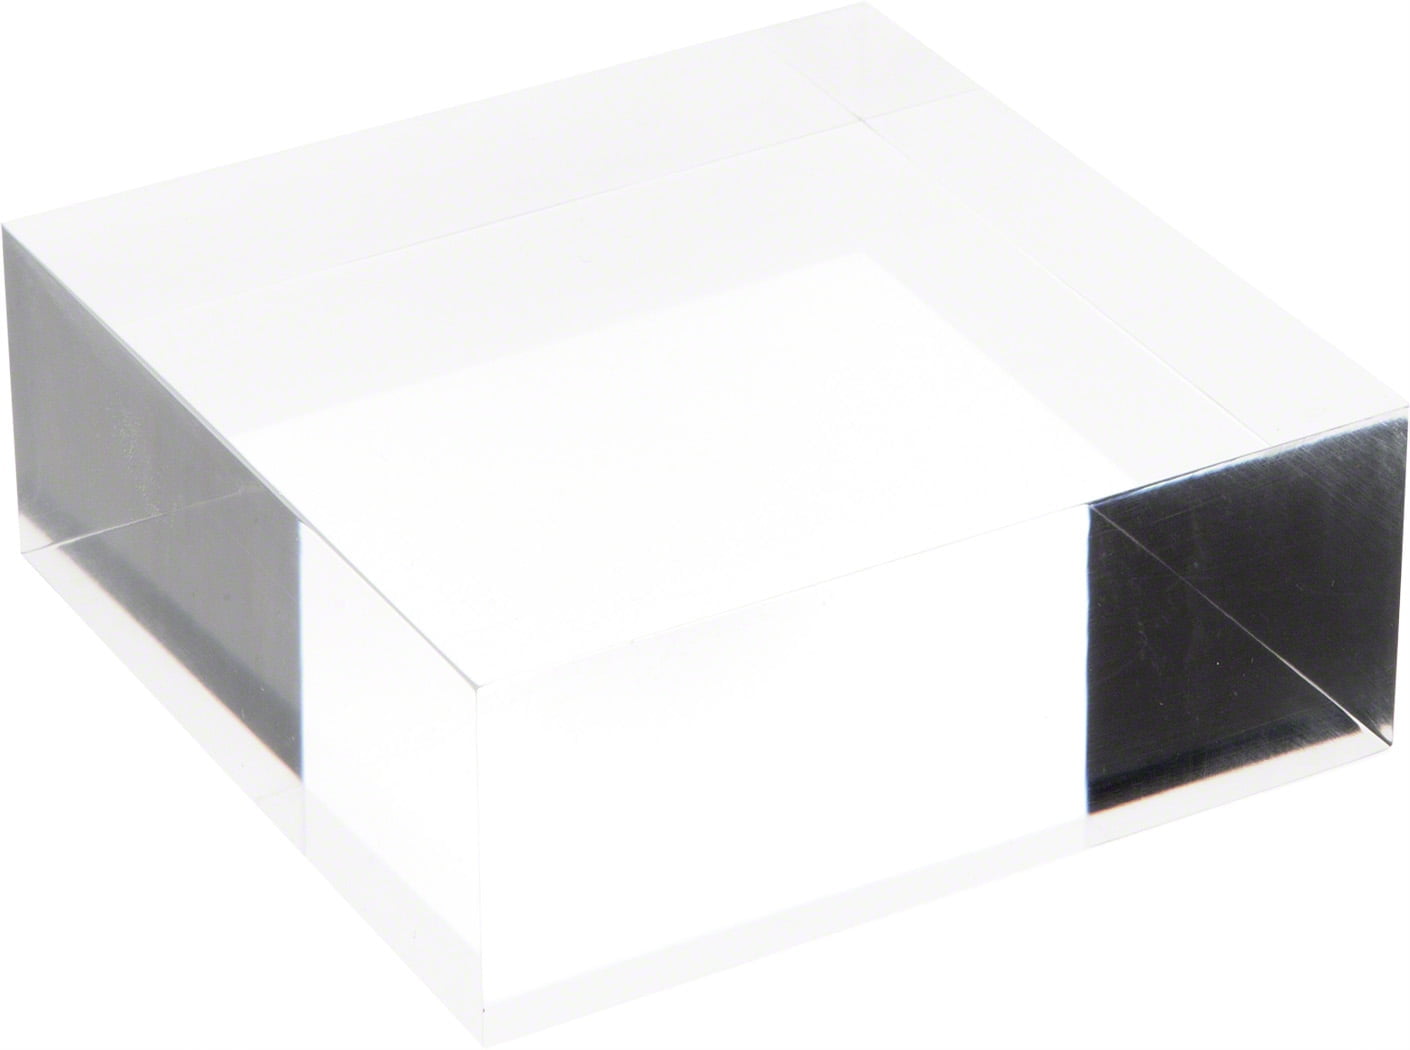 Solid Acrylic Blocks - 1 X 2 X 2